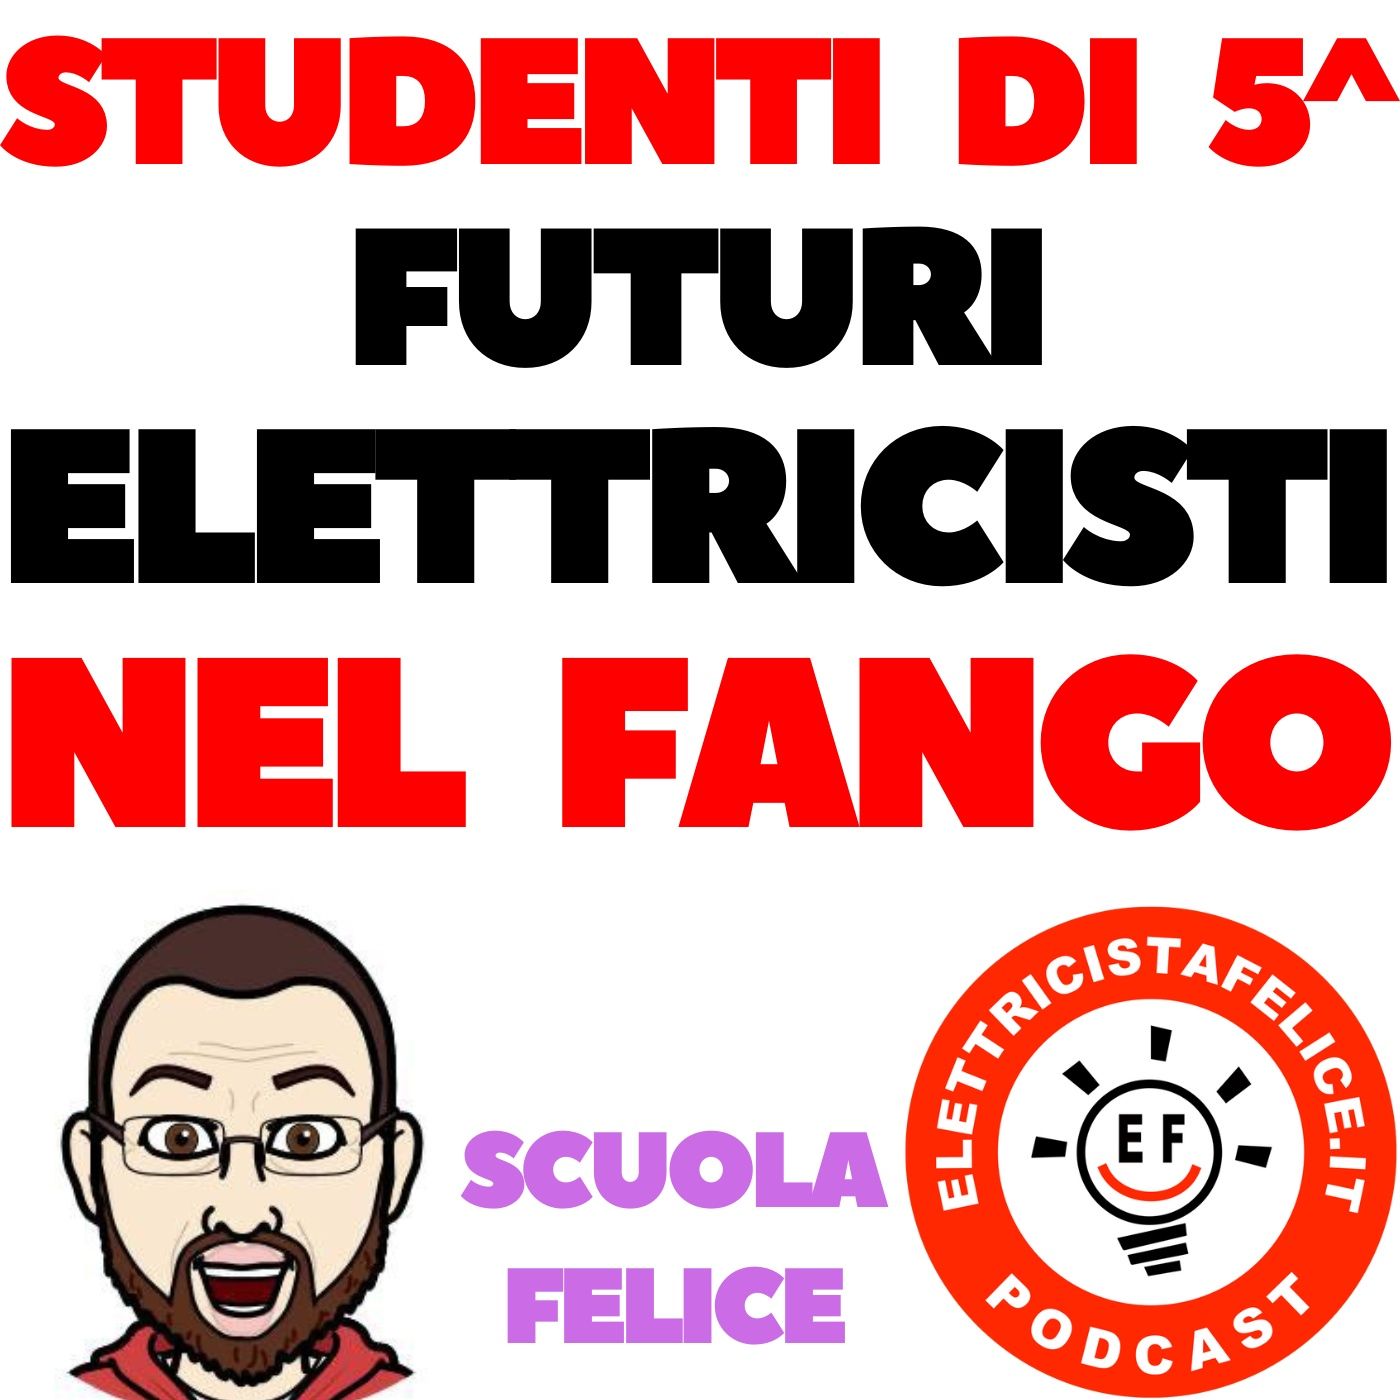 219 Studenti di 5^ futuri Elettricisti nel Fango